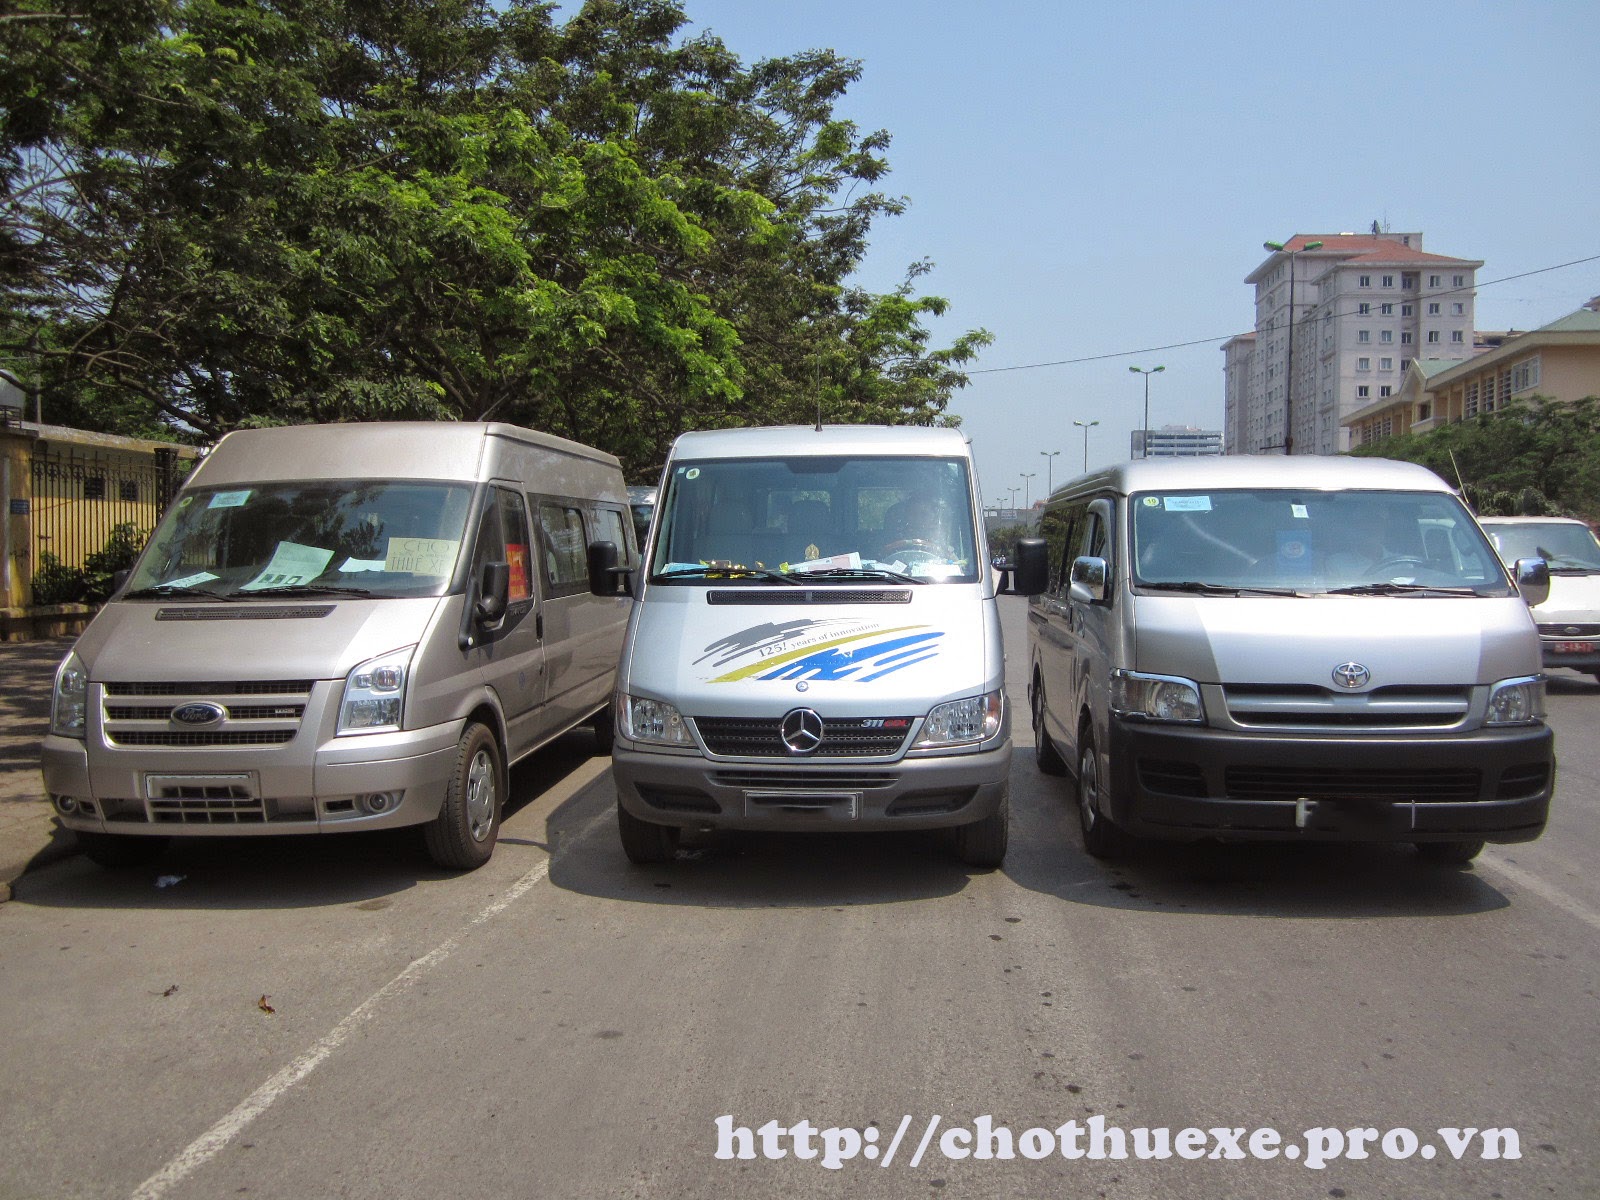 Cho thuê xe đi Chùa Hương, dịch vụ cho thuê xe chuyên nghiệp